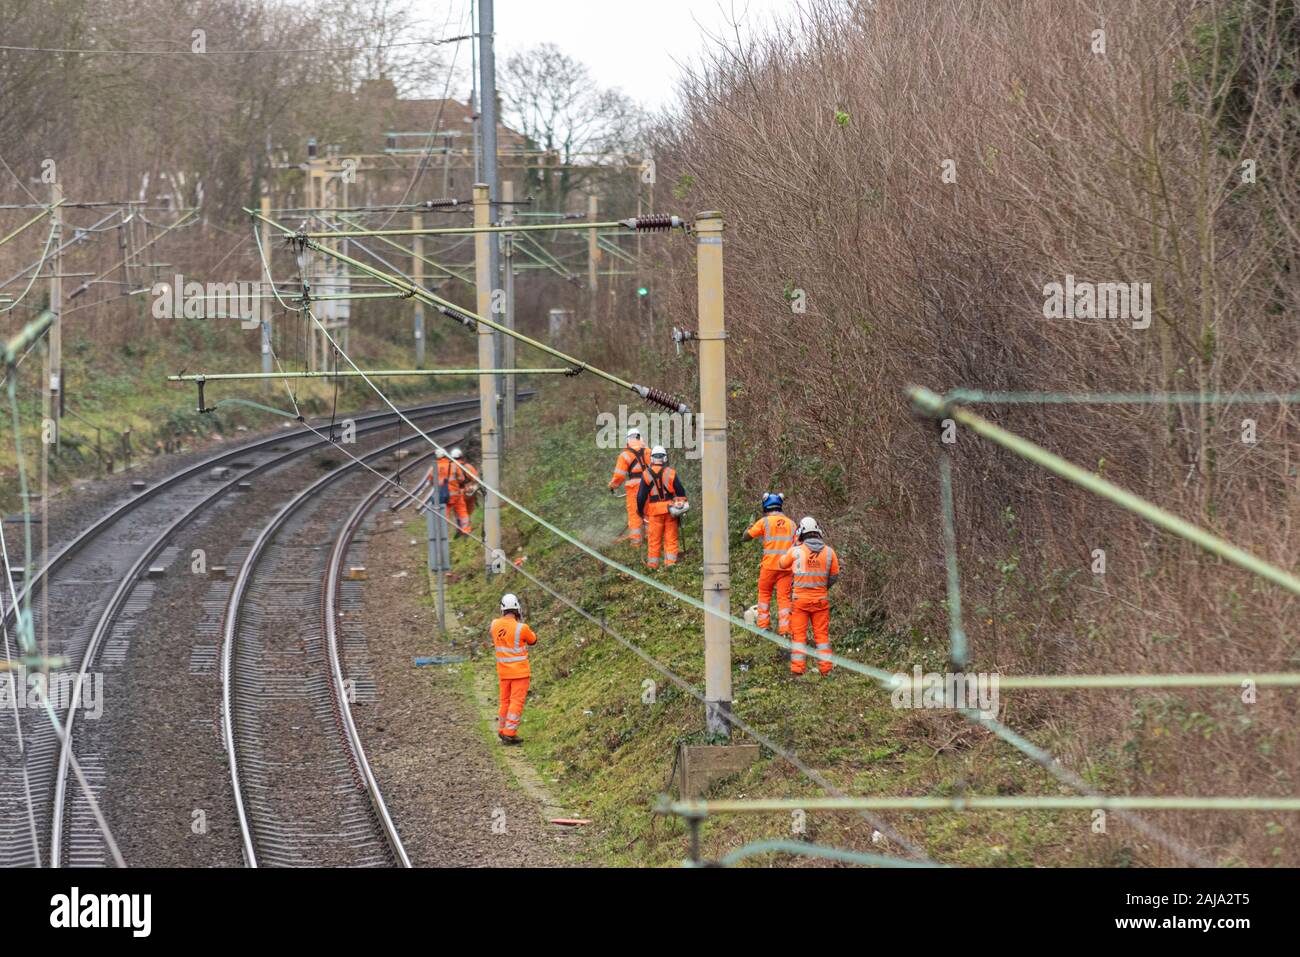 Les travailleurs RailScape réduisant végétation près de la voie ferrée de la gare de C2C à Southend on Sea, Essex, Royaume-Uni. Façon permanente Banque D'Images